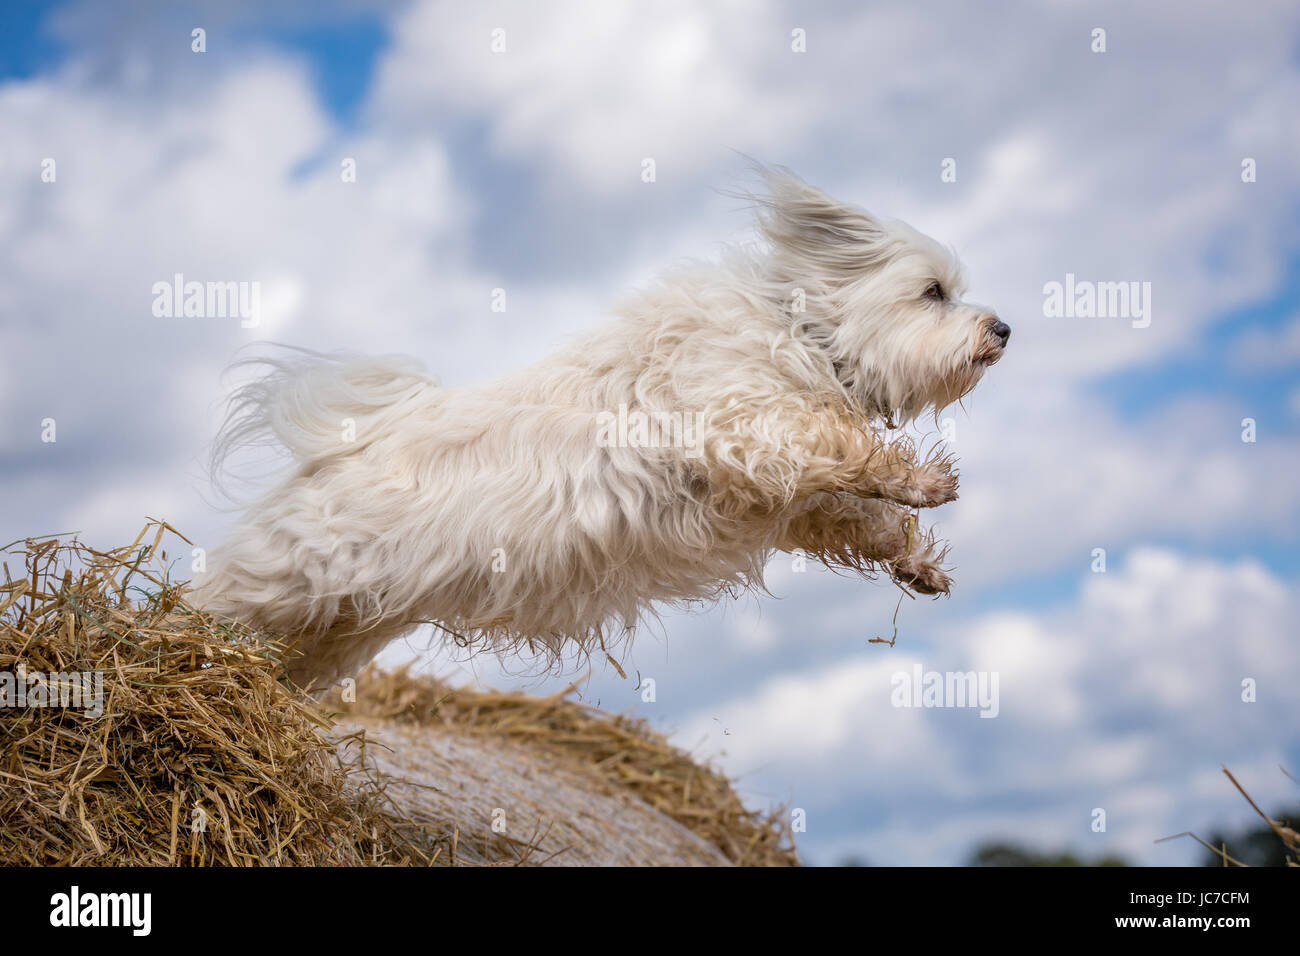 Kleiner weißer Hund hüpft von einem Strohballen zum nächsten. Stock Photo